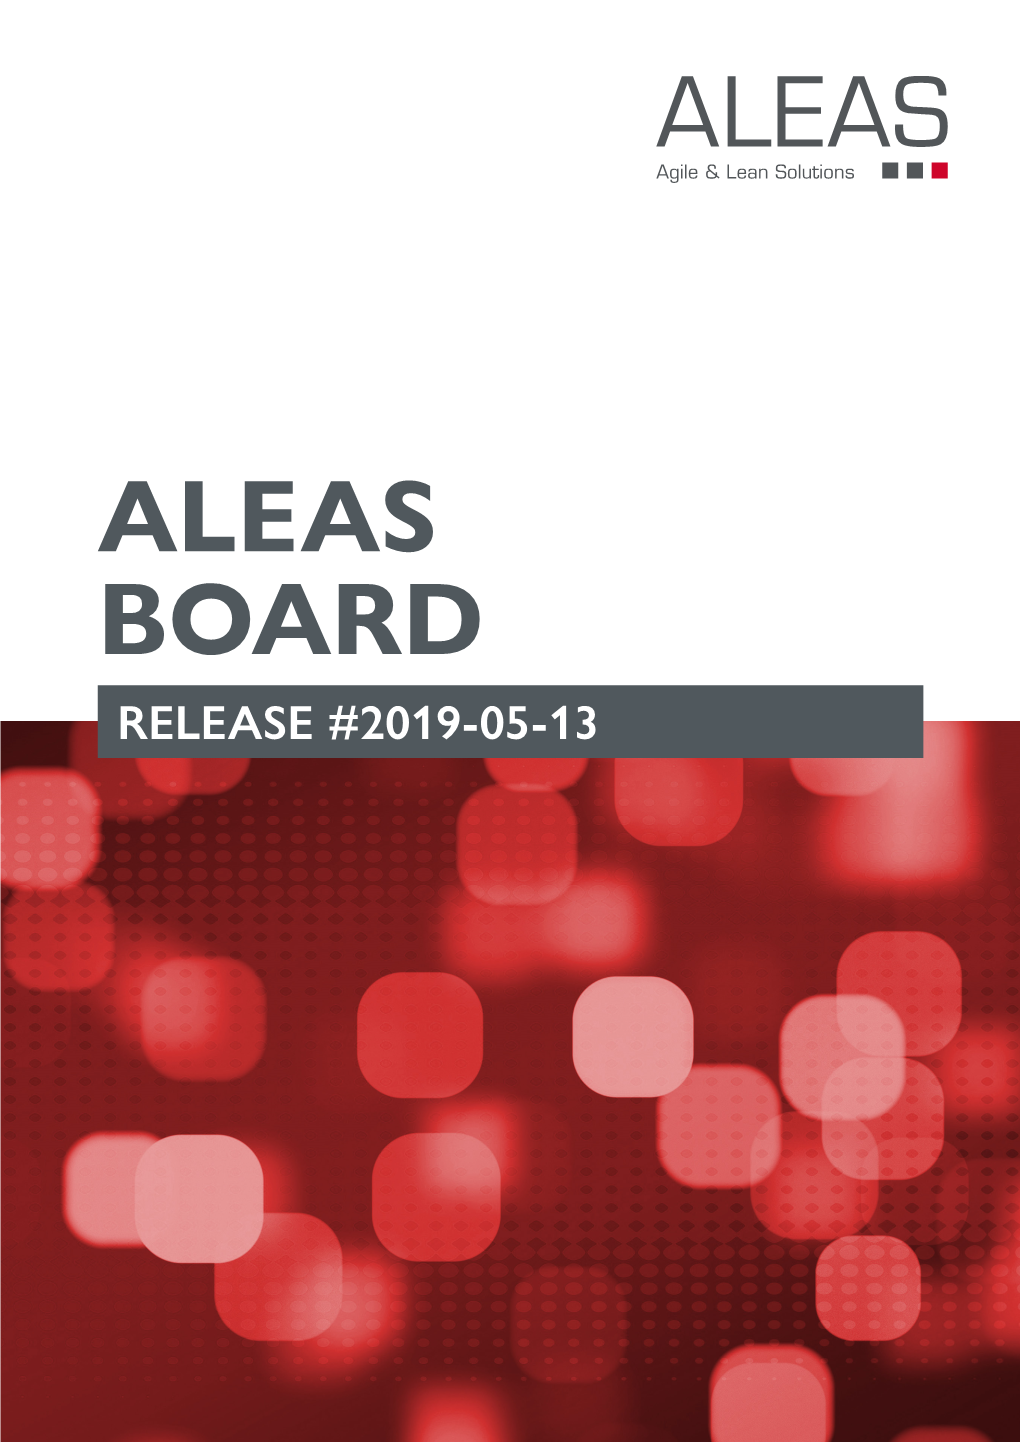 Aleas Board Release #2019-05-13 What Is New? Aleas Board Release #2019-05-13